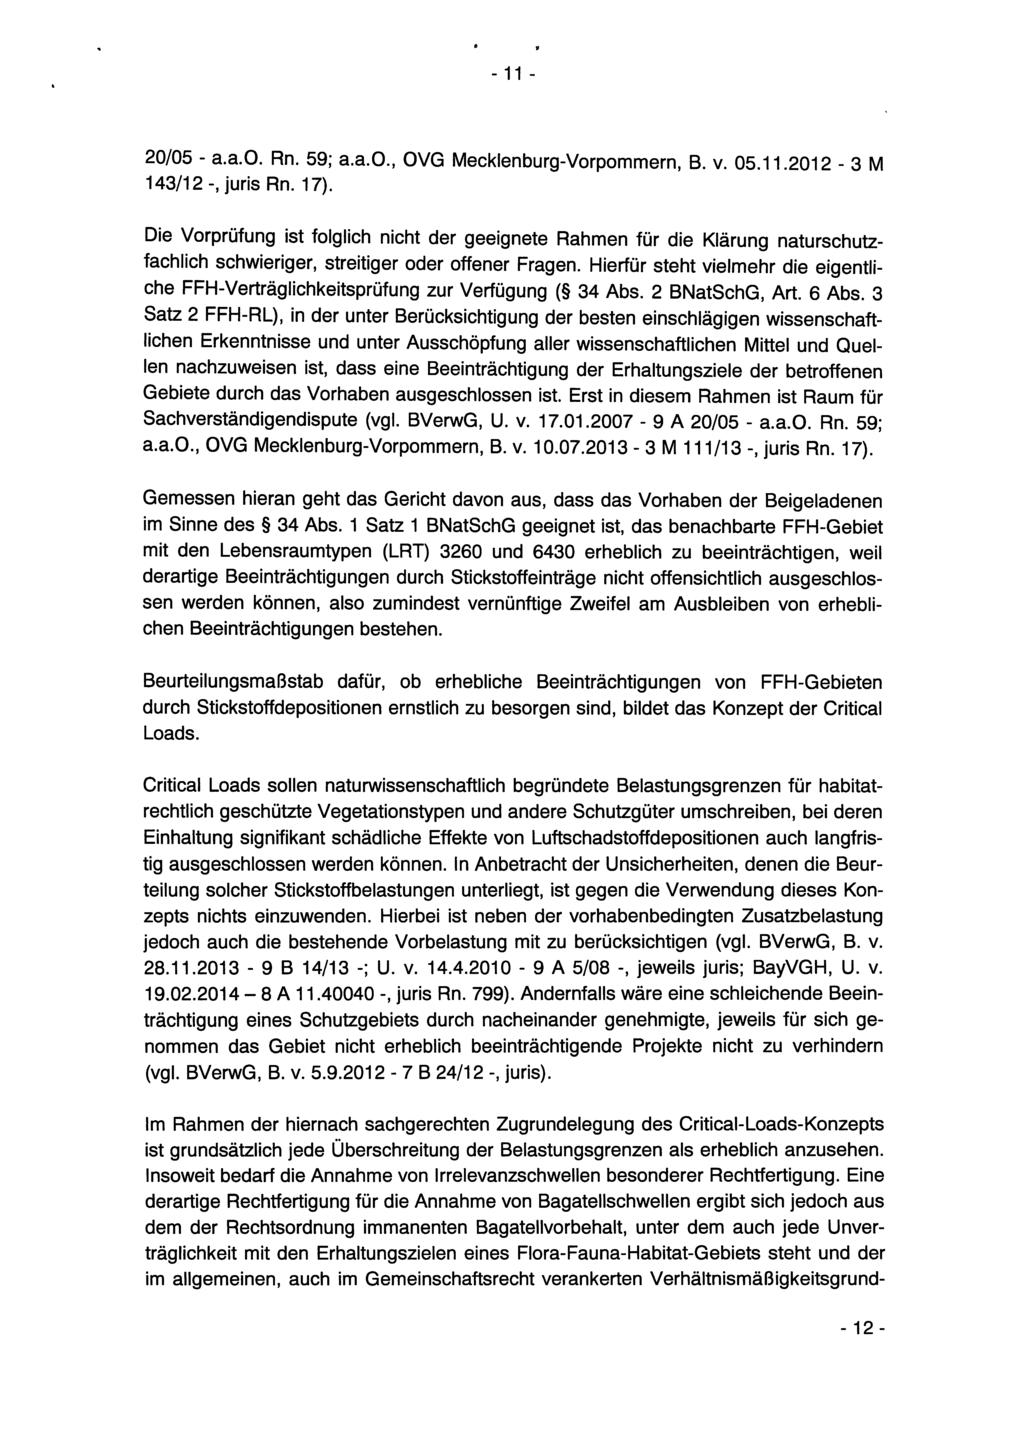 - 11-20/05 - a.a.o. Rn. 59; a.a.o., OVG Mecklenburg-Vorpommern, B. v. 05.11.2012-3 M 143/12 -, juris Rn. 17).